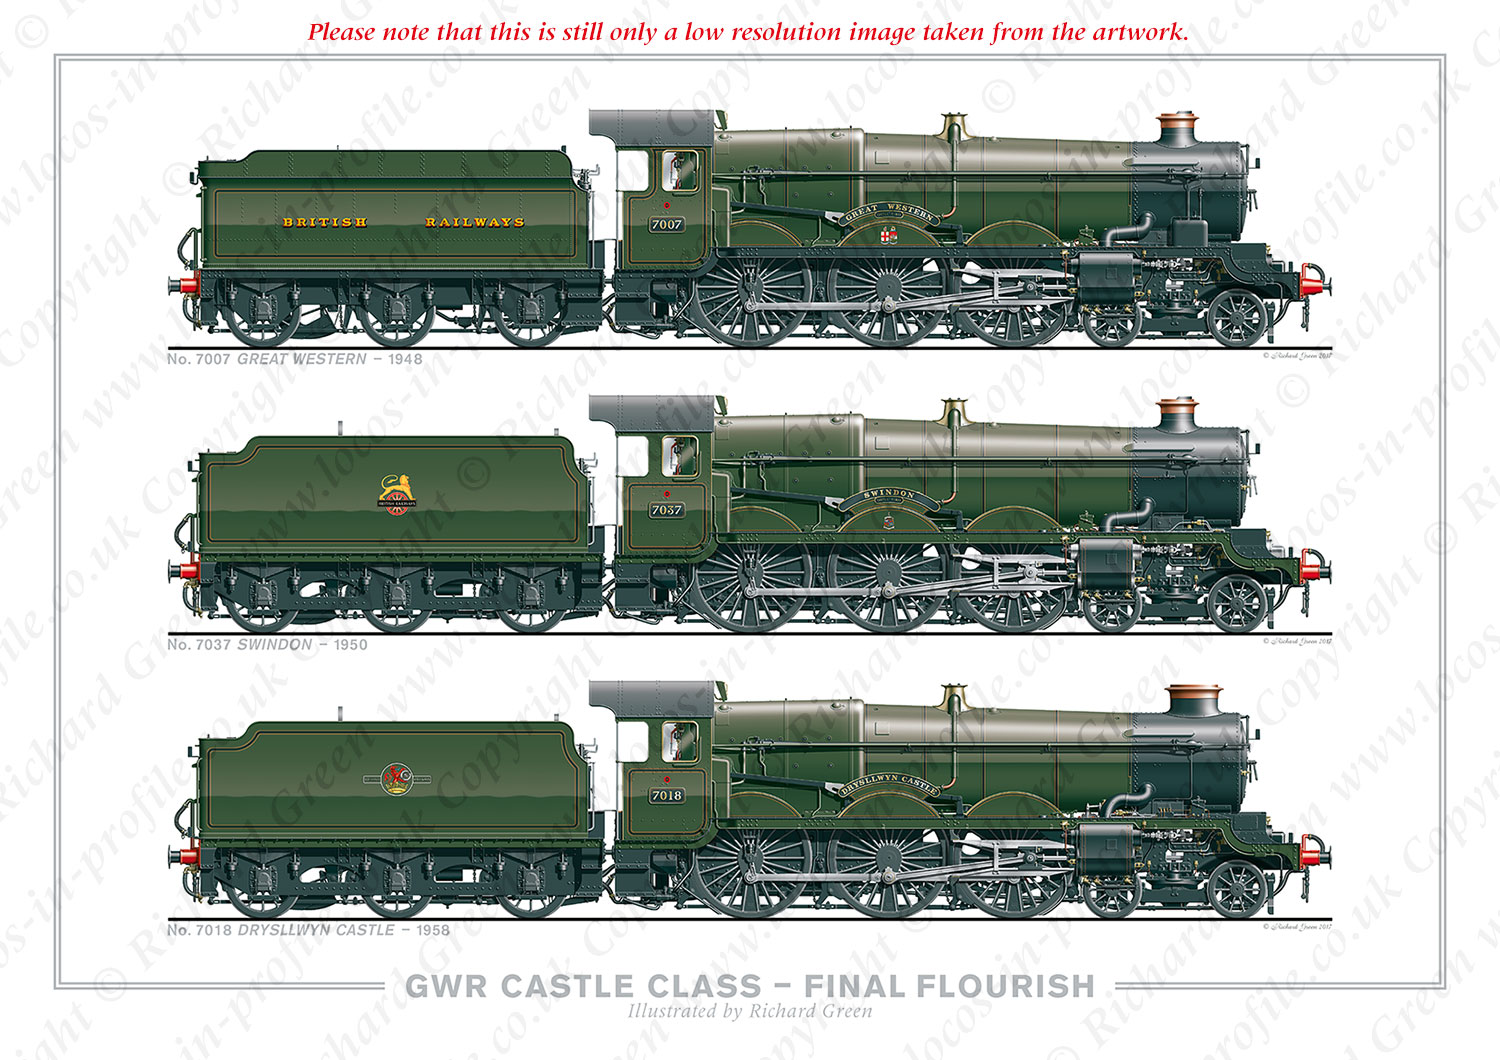 GWR Castle Class – Final Flourish. No. 7007 Great Western (1948), No. 7037 Swindon (1950), No. 7018 Drysllwyn Castle (1958) (C. B. Collett / F. W. Hawksworth) Steam Locomotive Print